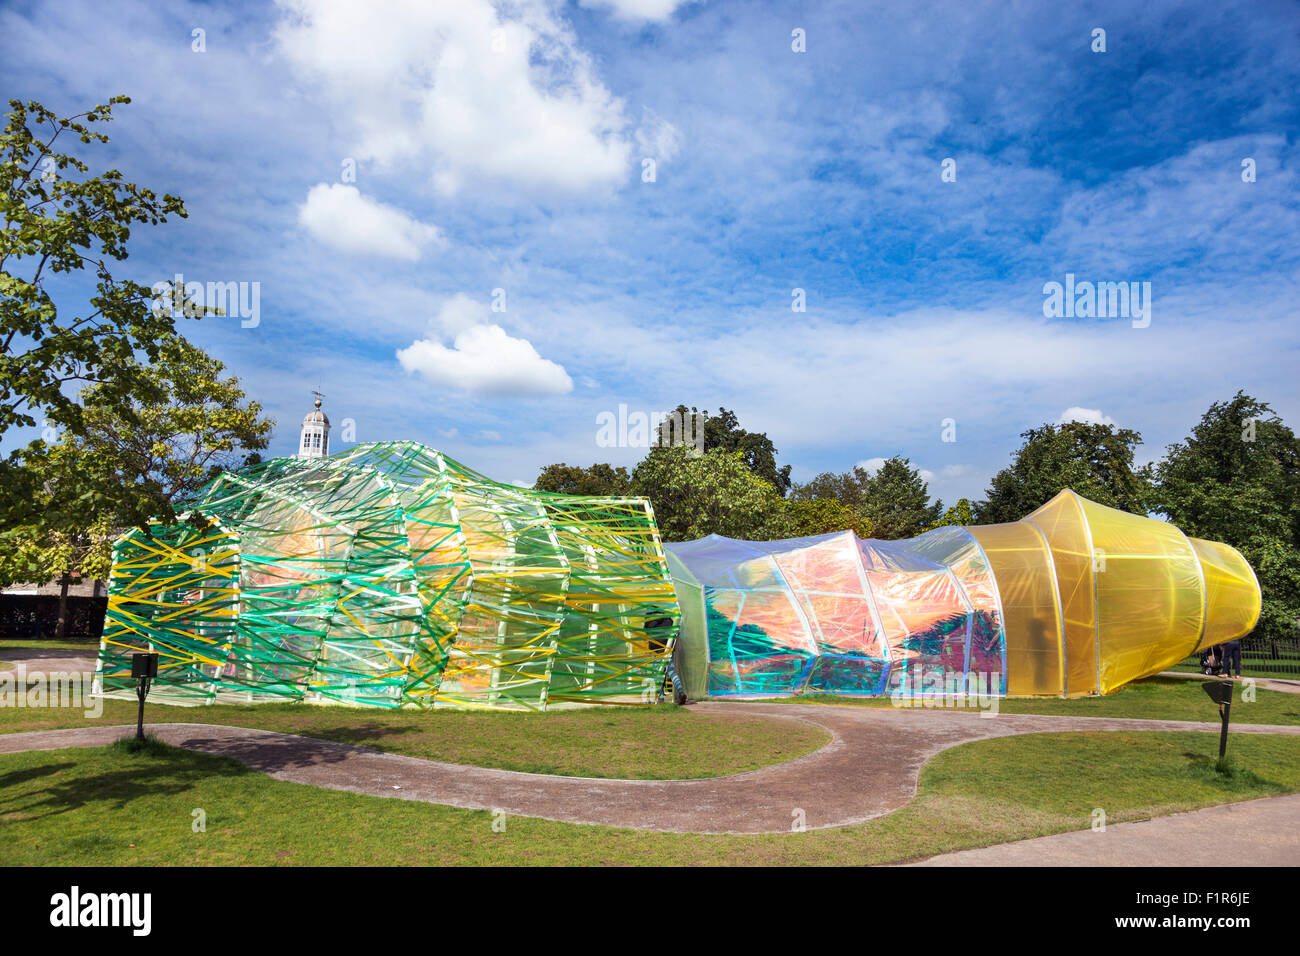 6 Septembre 2015 - Serpentine pavilion 2015 Selgascano architectes espagnols à Hyde Park, Londres, UK Banque D'Images